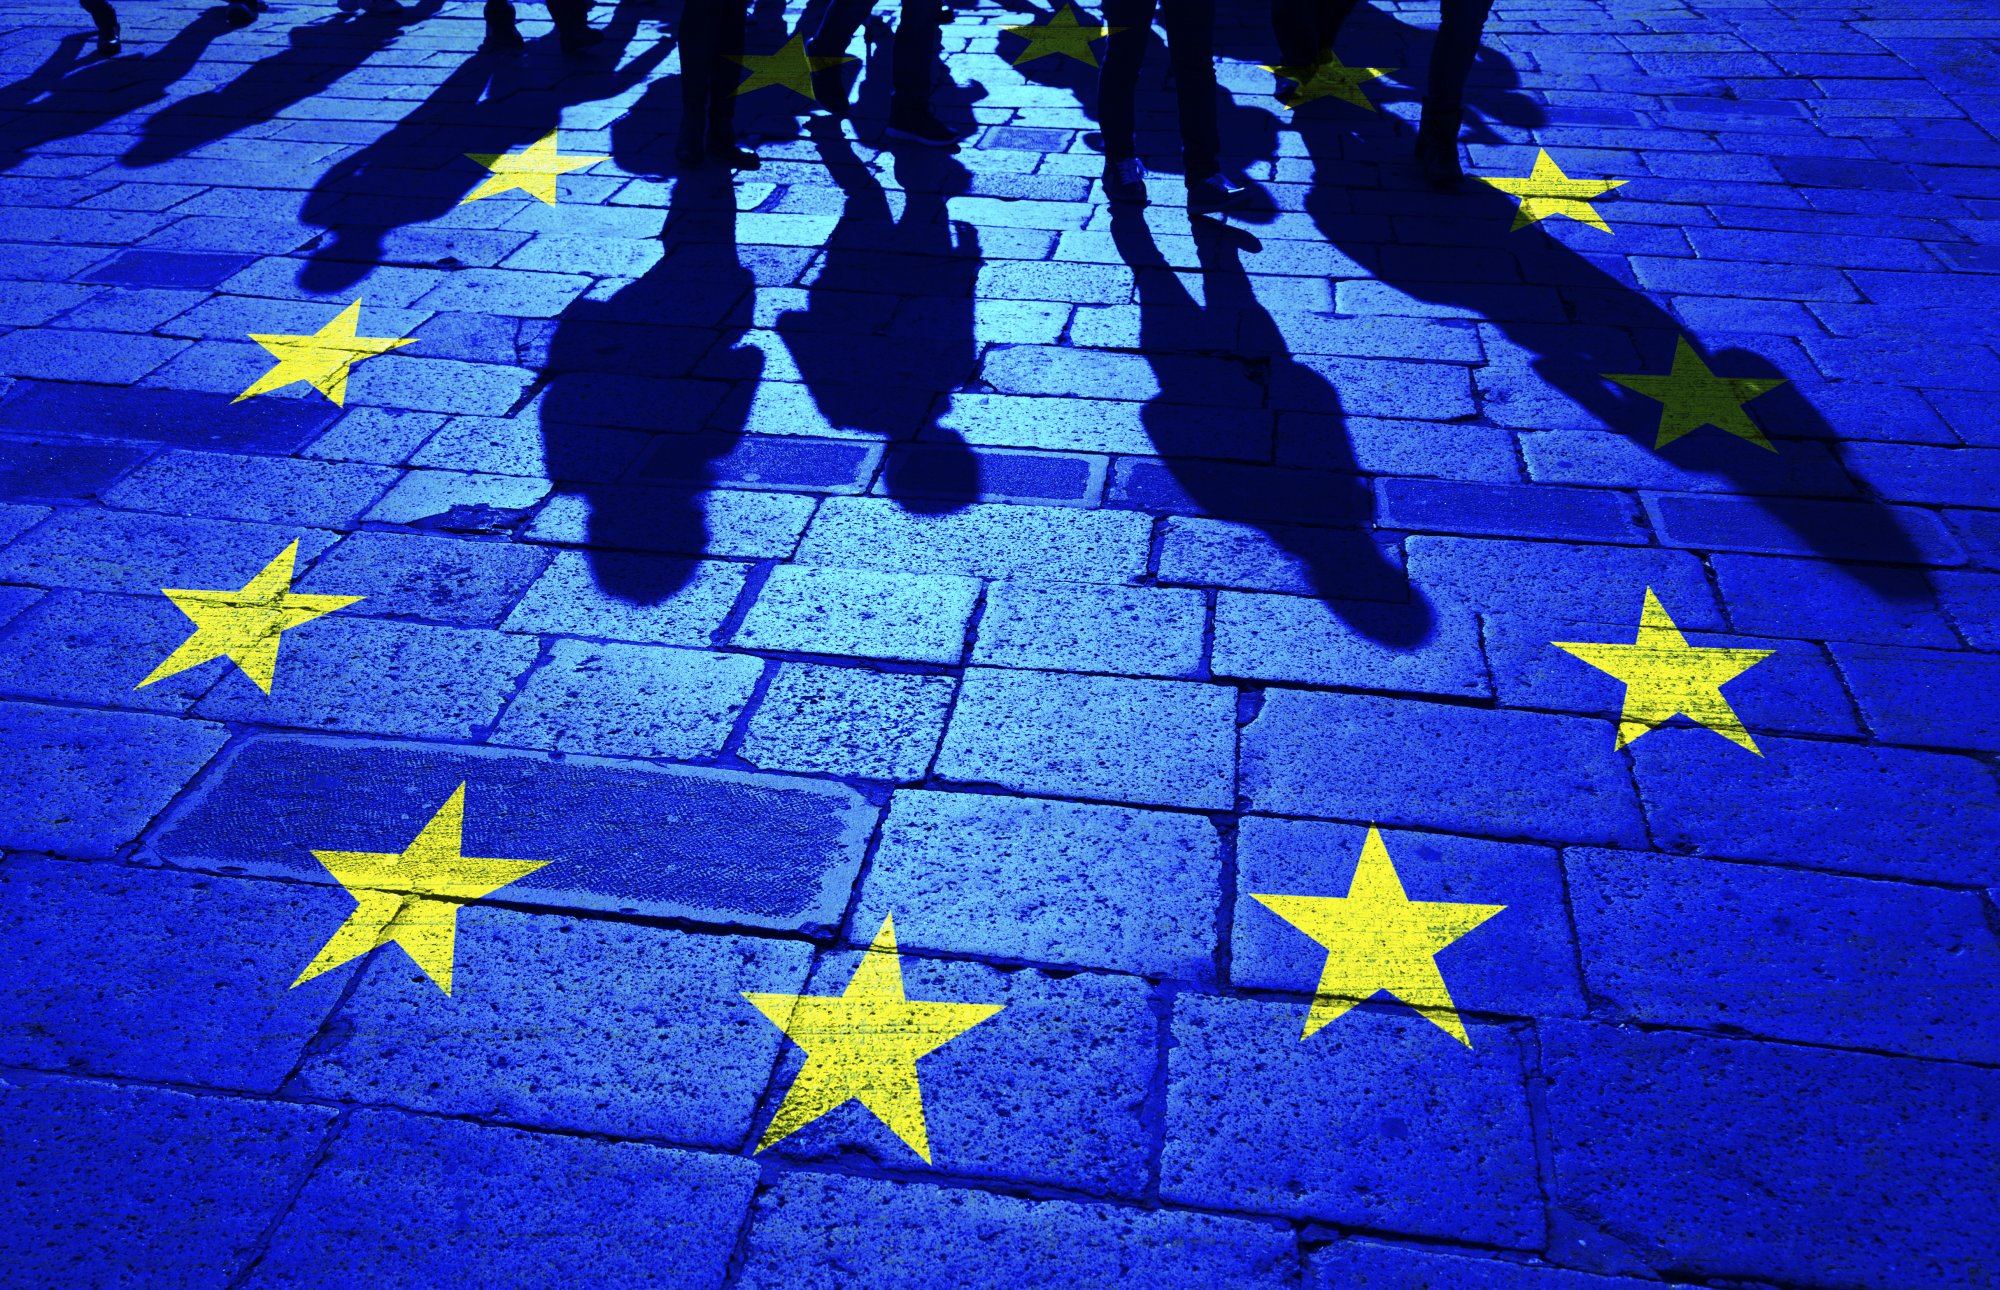 Τελικά ποιος είναι πιο «Ευρωπαίος»; Όσοι θέλουν κράτος δικαίου ή οι ακροδεξιοί συνοδοιπόροι της κυβέρνησης στην Ευρώπη;